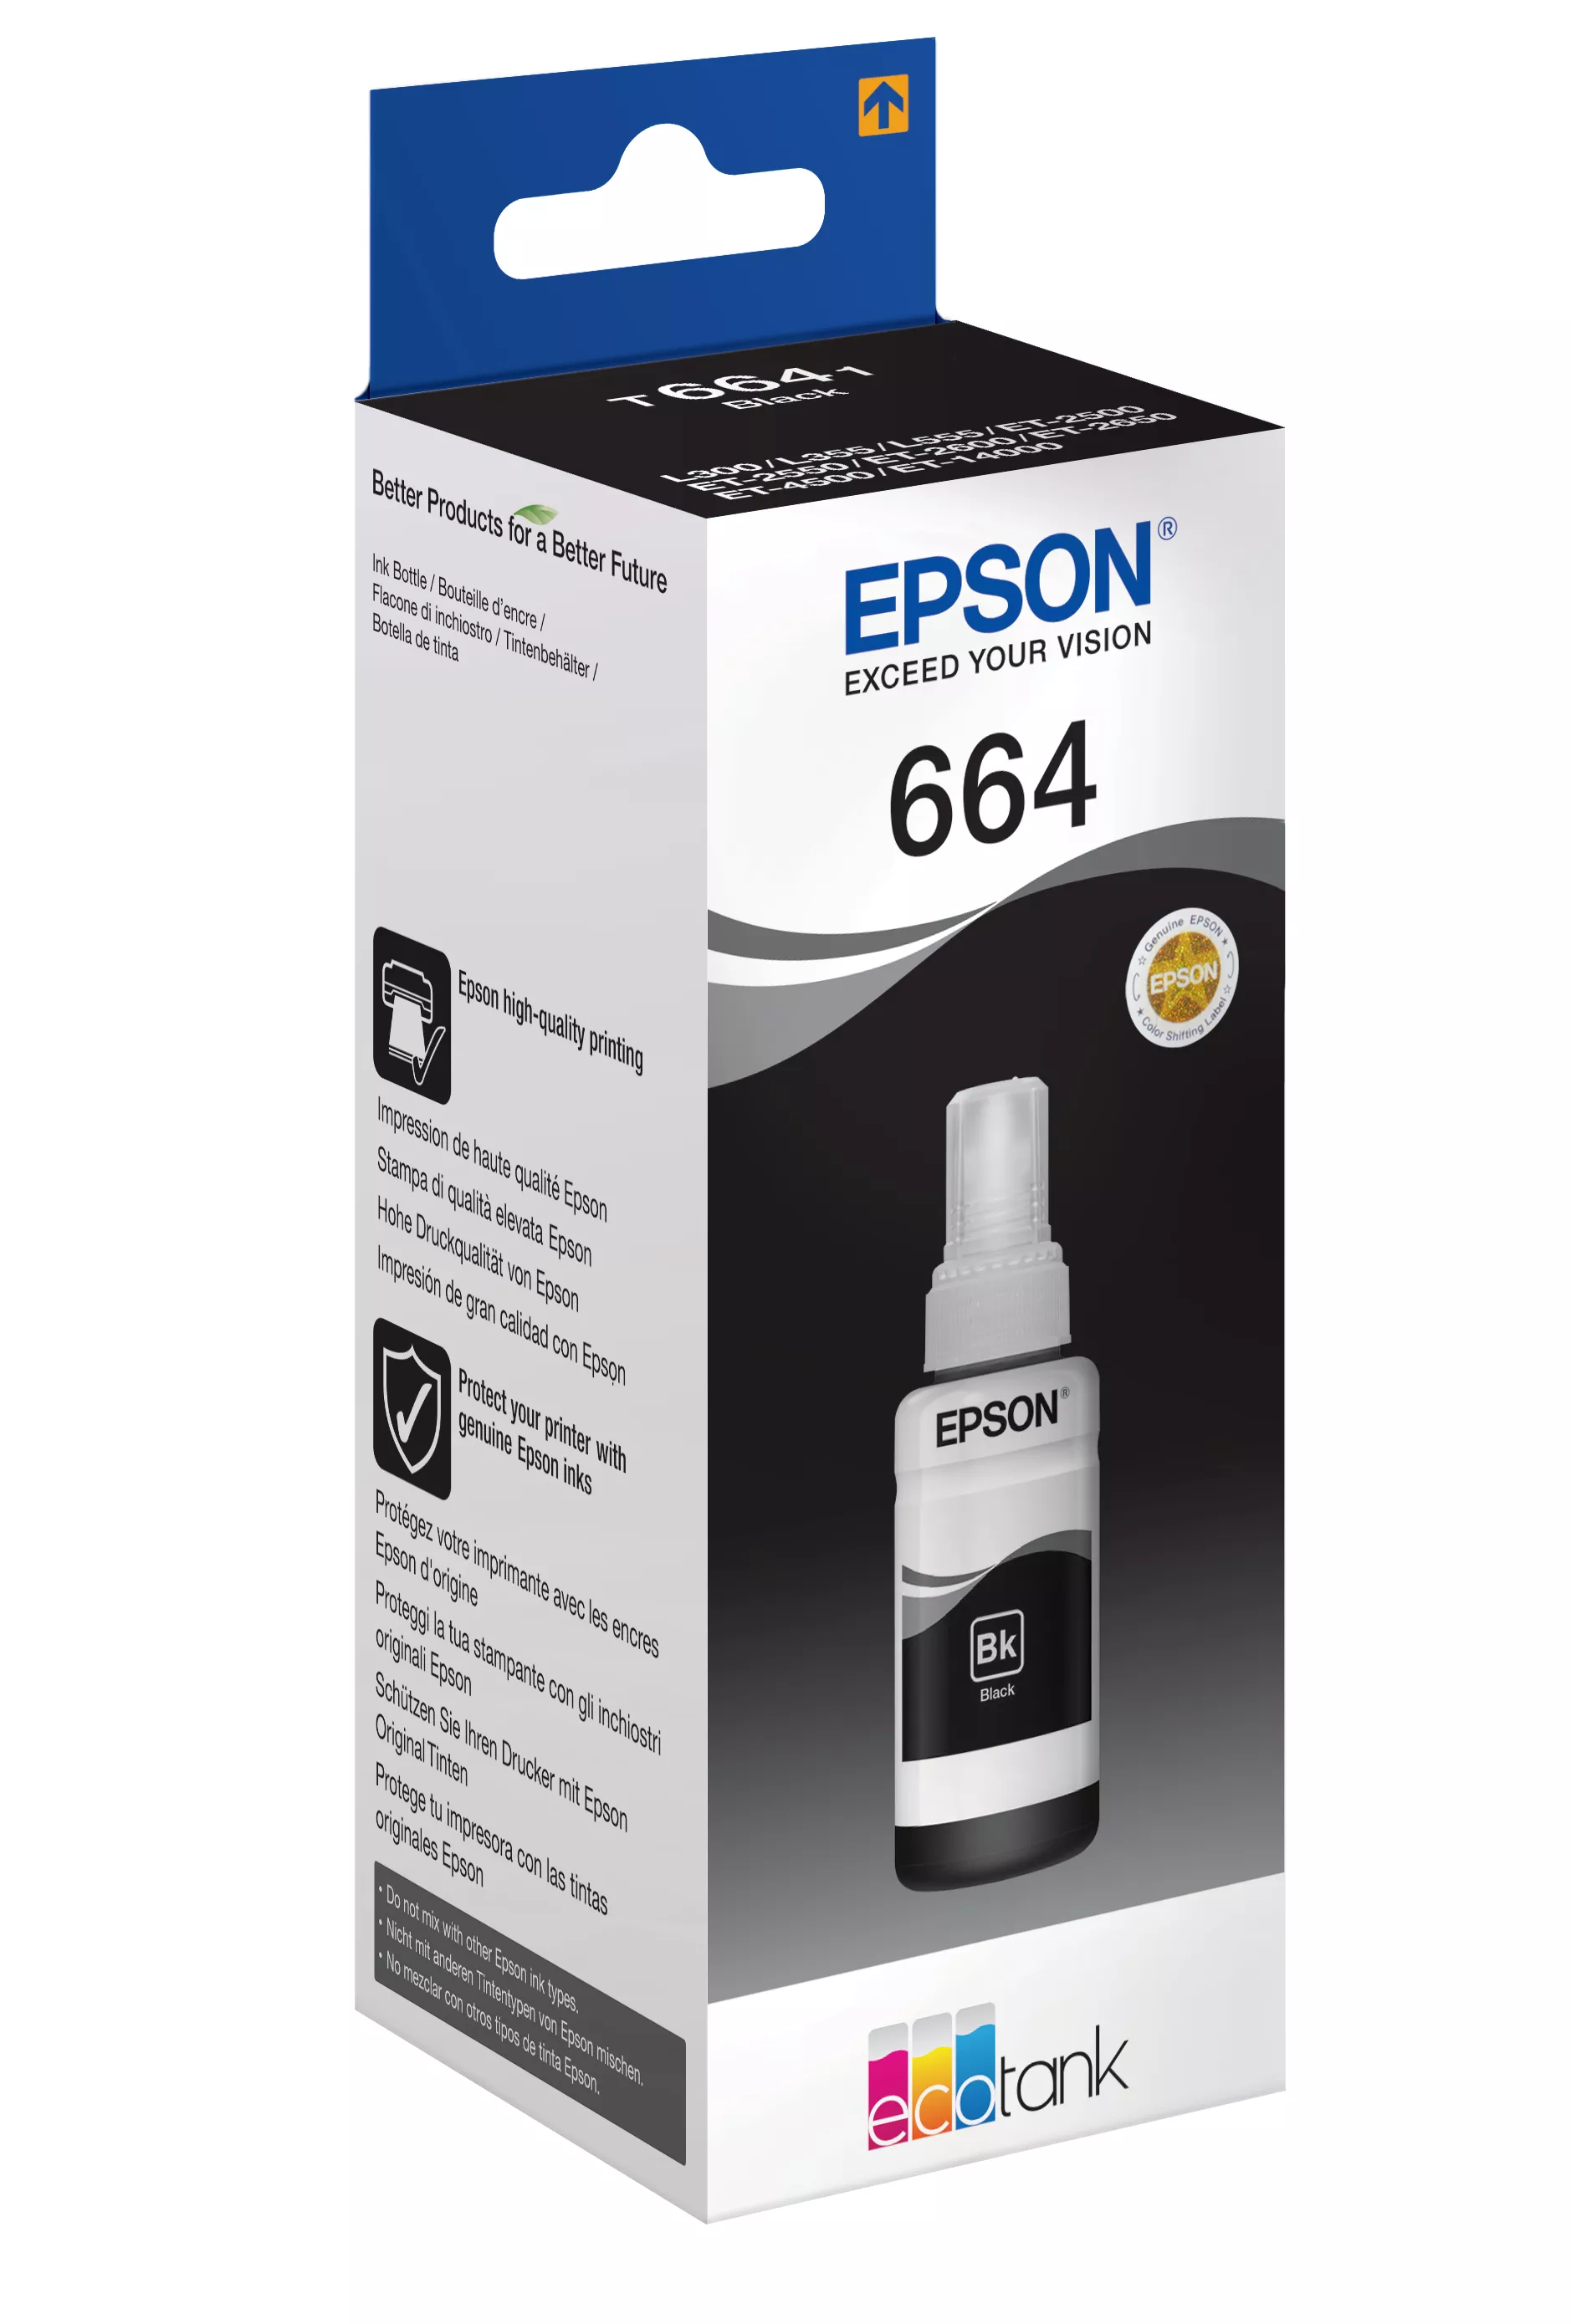 Vente EPSON T6641 cartouche d encre noir 70ml pack Epson au meilleur prix - visuel 2